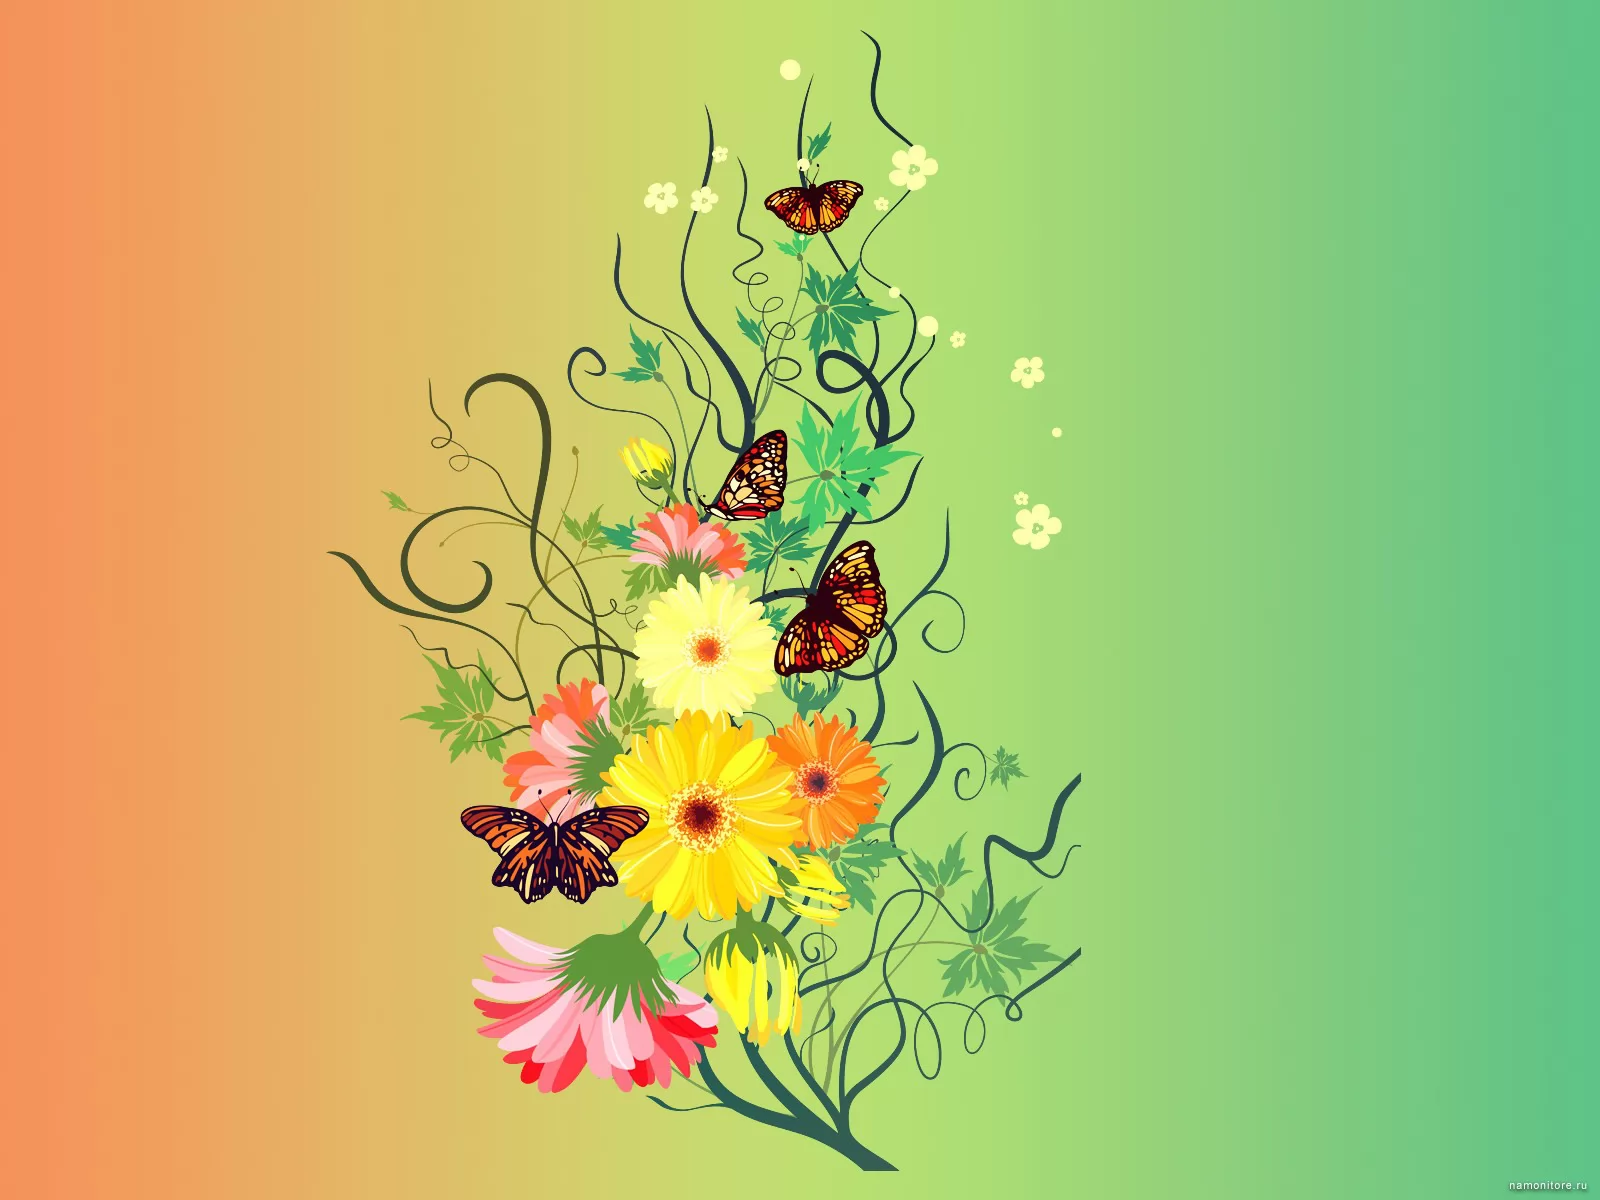 Рисунки на фон телефона. Фон с цветами. Абстрактные цветы. Фон с цветами и бабочками. Желтый фон с цветочным орнаментом.